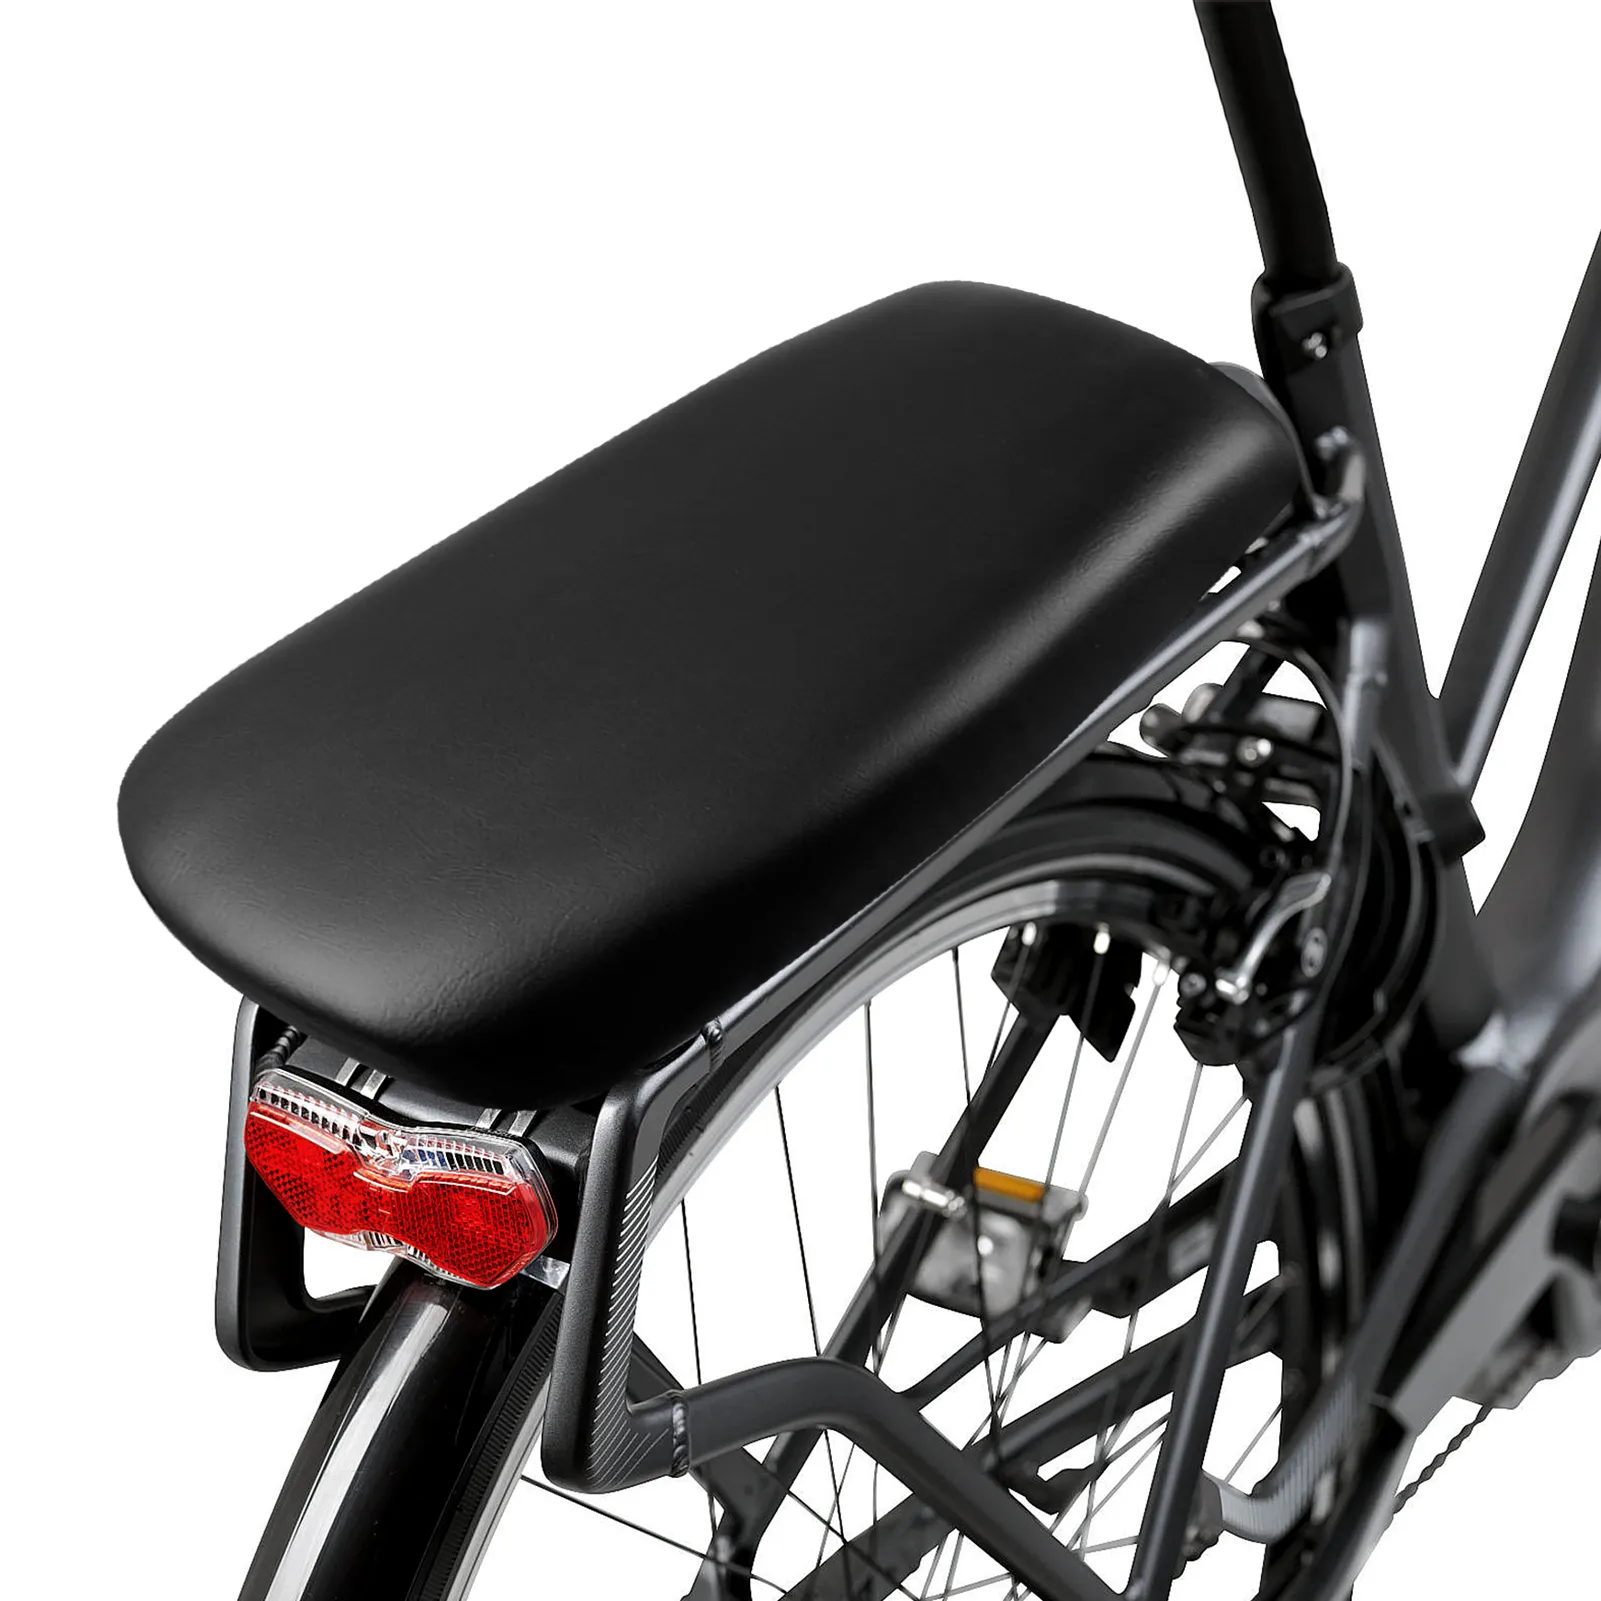 Sedile per mountain bike piatto biciclette morbido cuscino sedile posteriore sedili posteriori sedili posteriori del cuscino scaffale posteriore